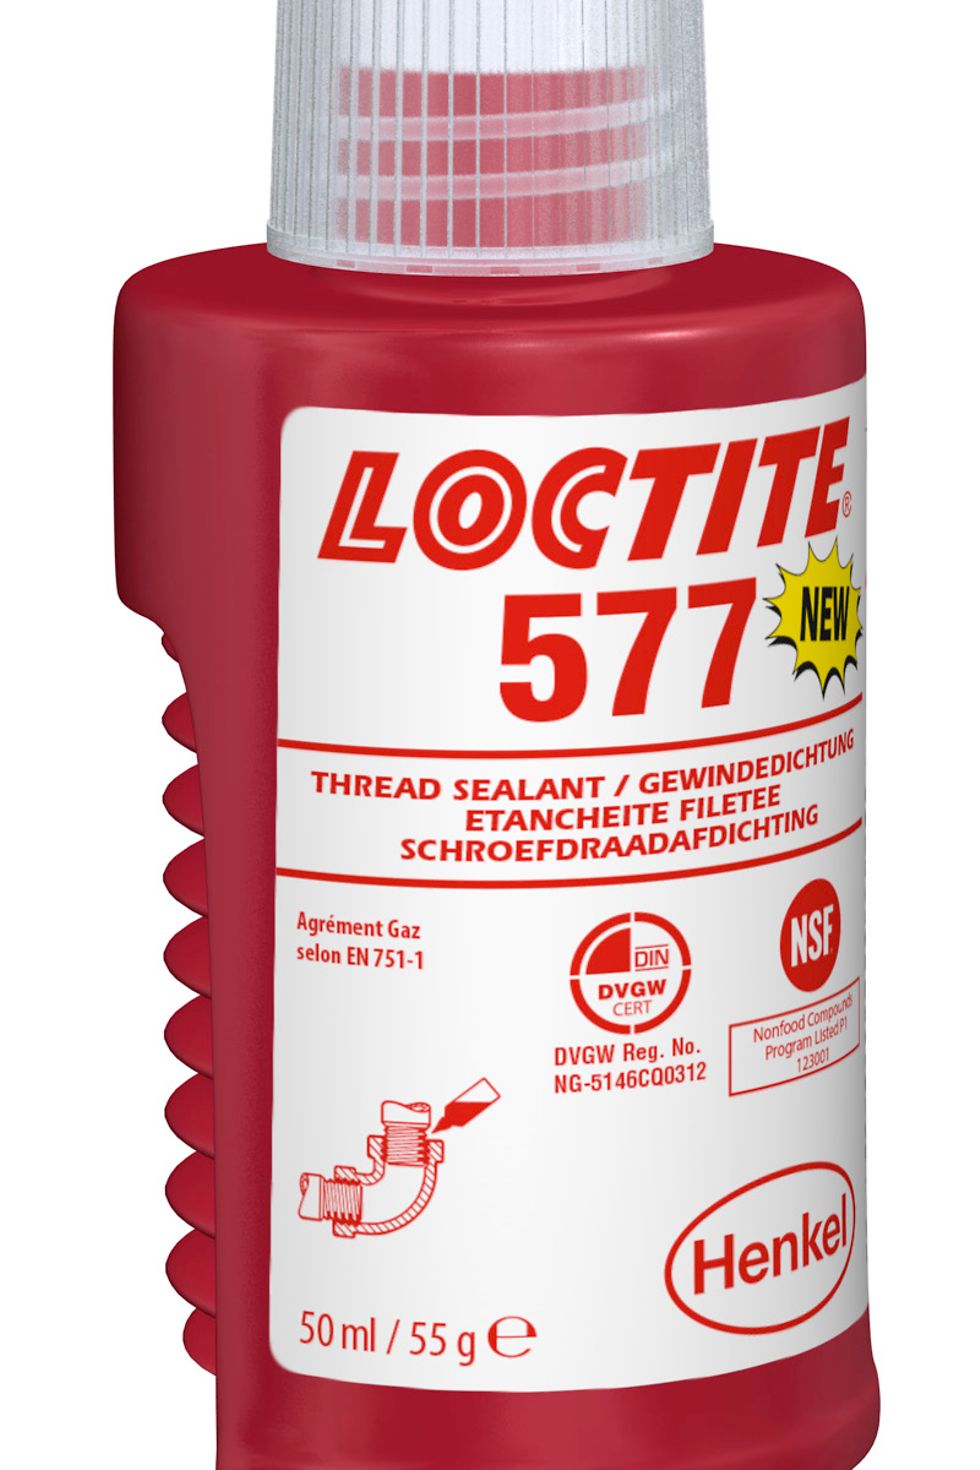 Loctite 577 è disponibile in diversi formati e volumi.